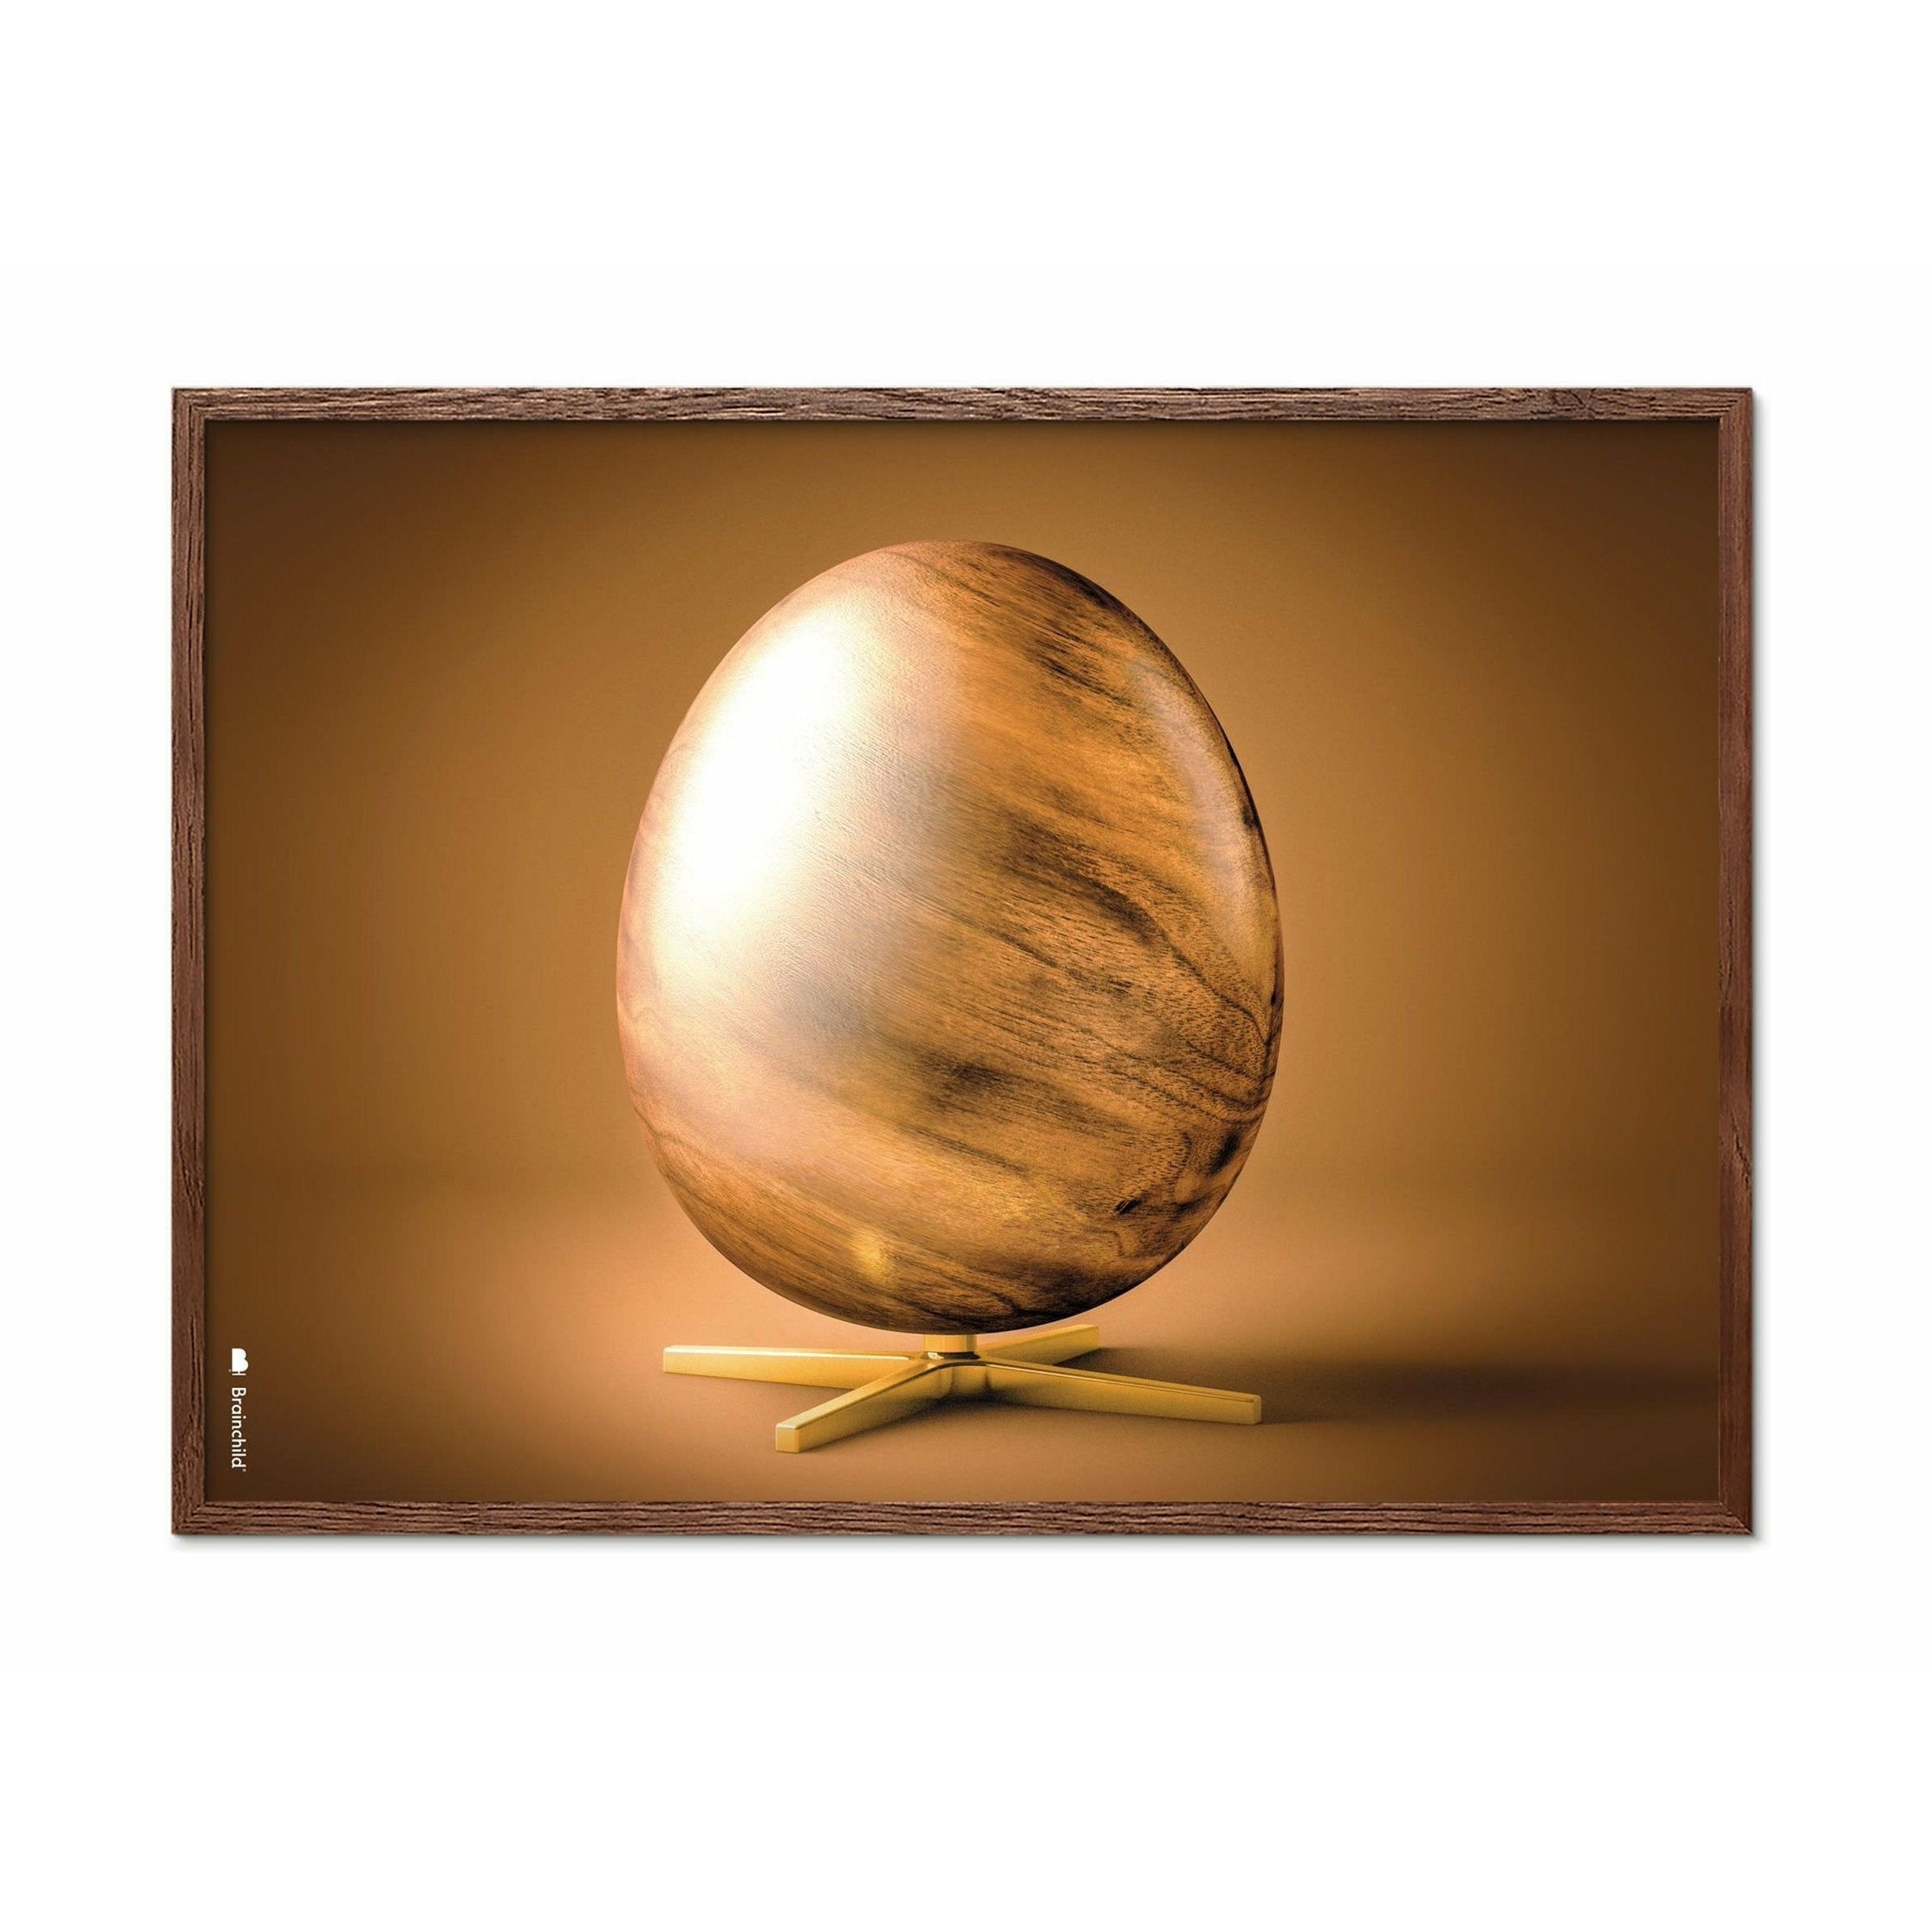 创生鸡蛋交叉格式海报，由深木50x70厘米制成的框架，棕色